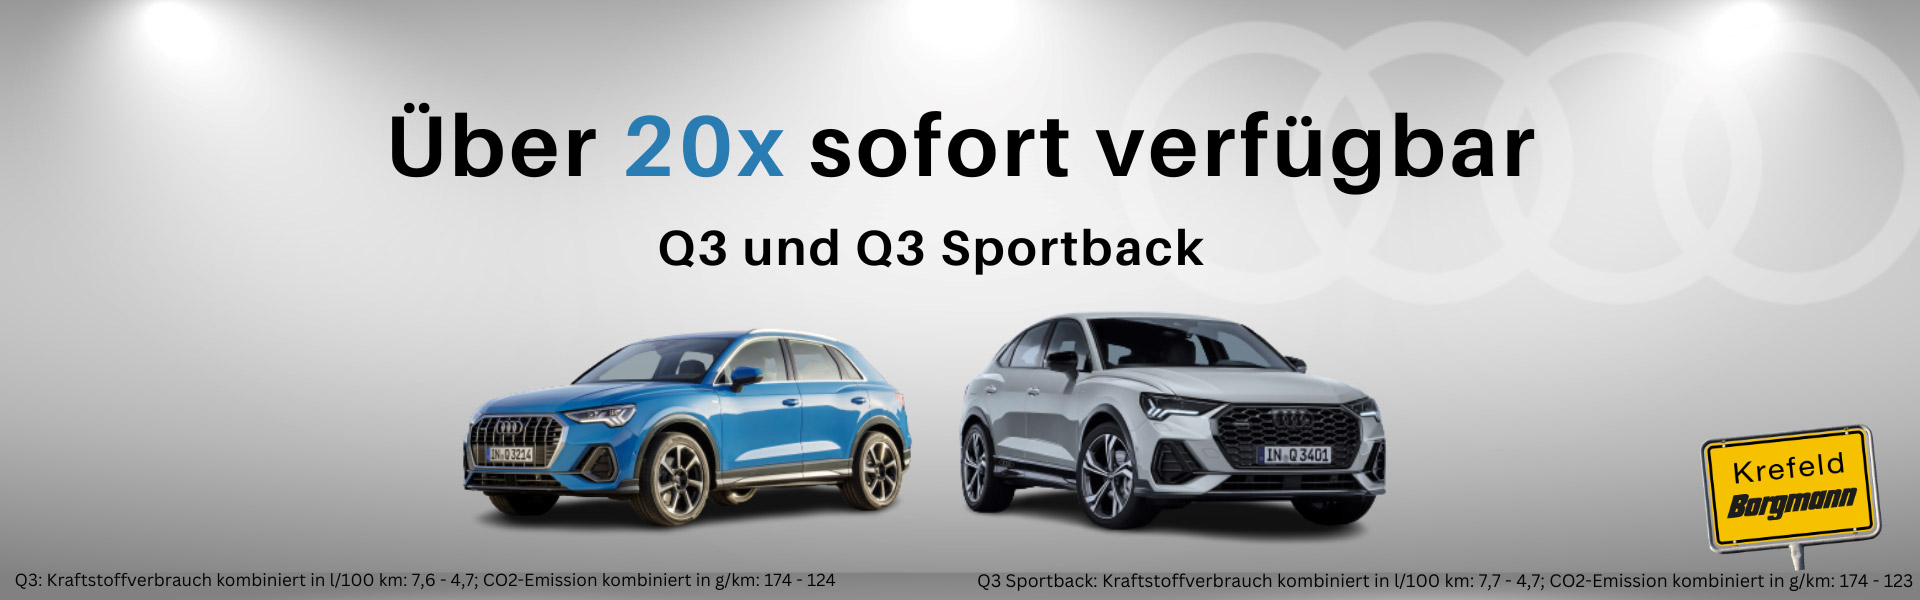 Audi Q3 und Q3 Sportback Sonderangebote